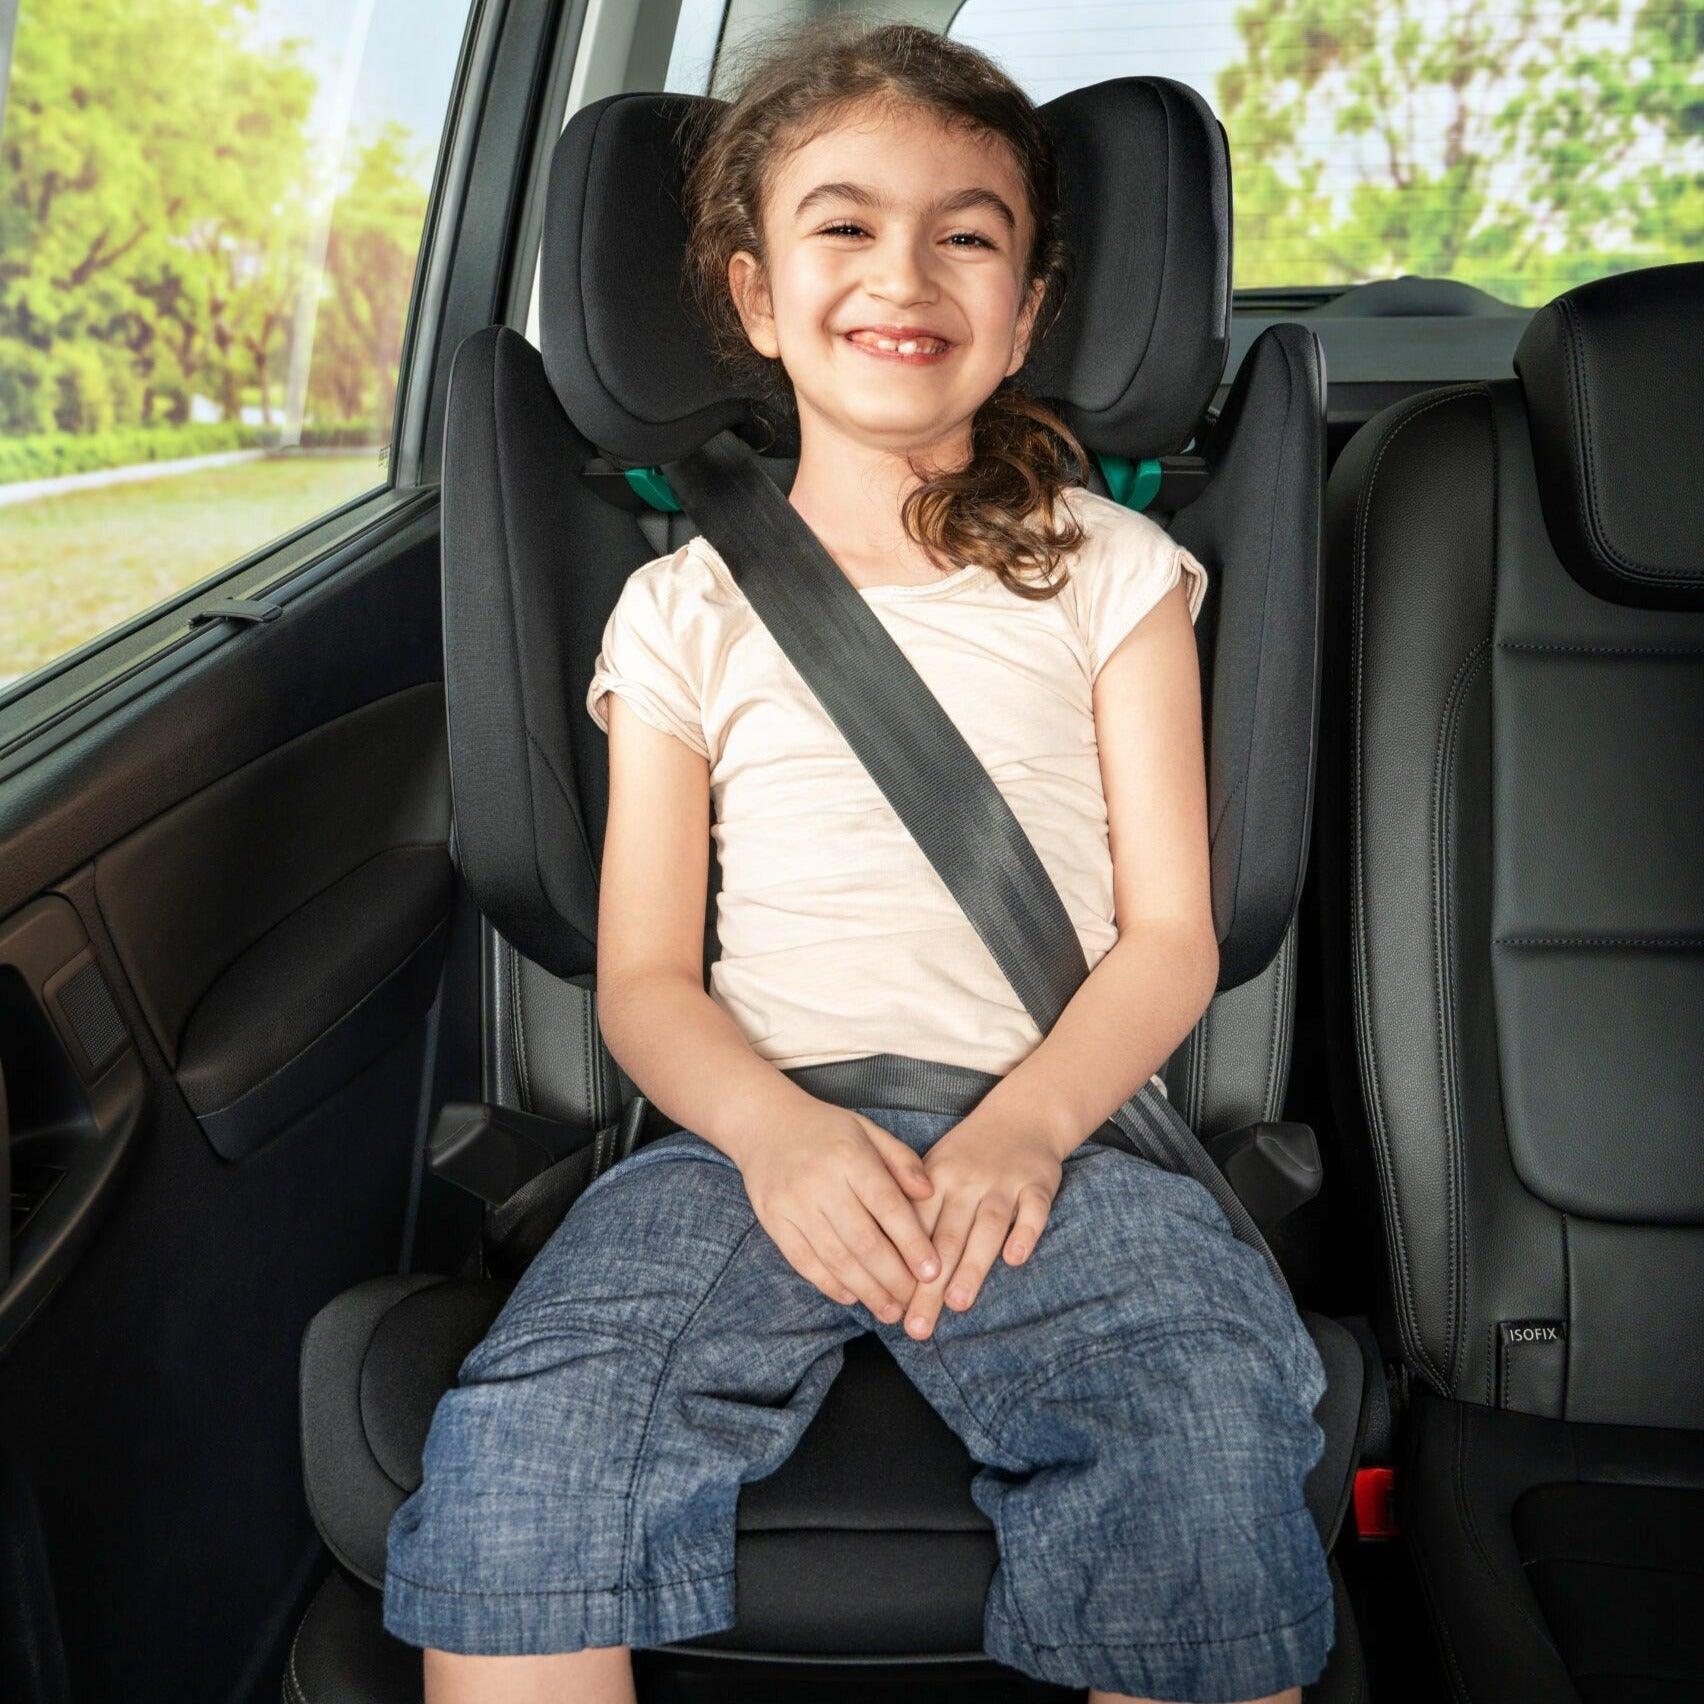 Britax Römer: Kidfix M i-Size 15-36 kg car seat